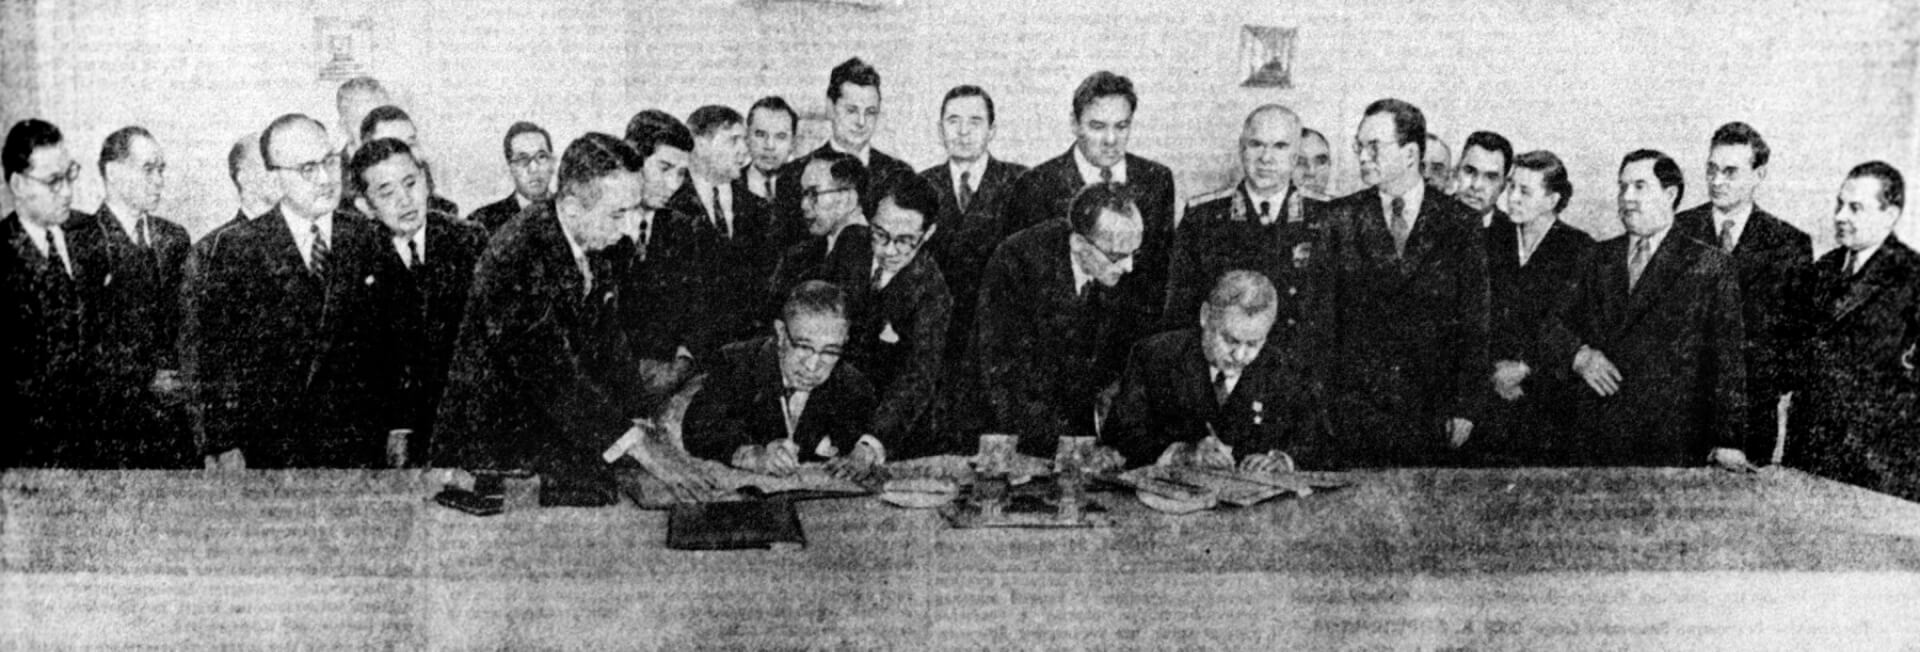 Николай Александрович Булганин и премьер-министр Японии Итиро Хатояма